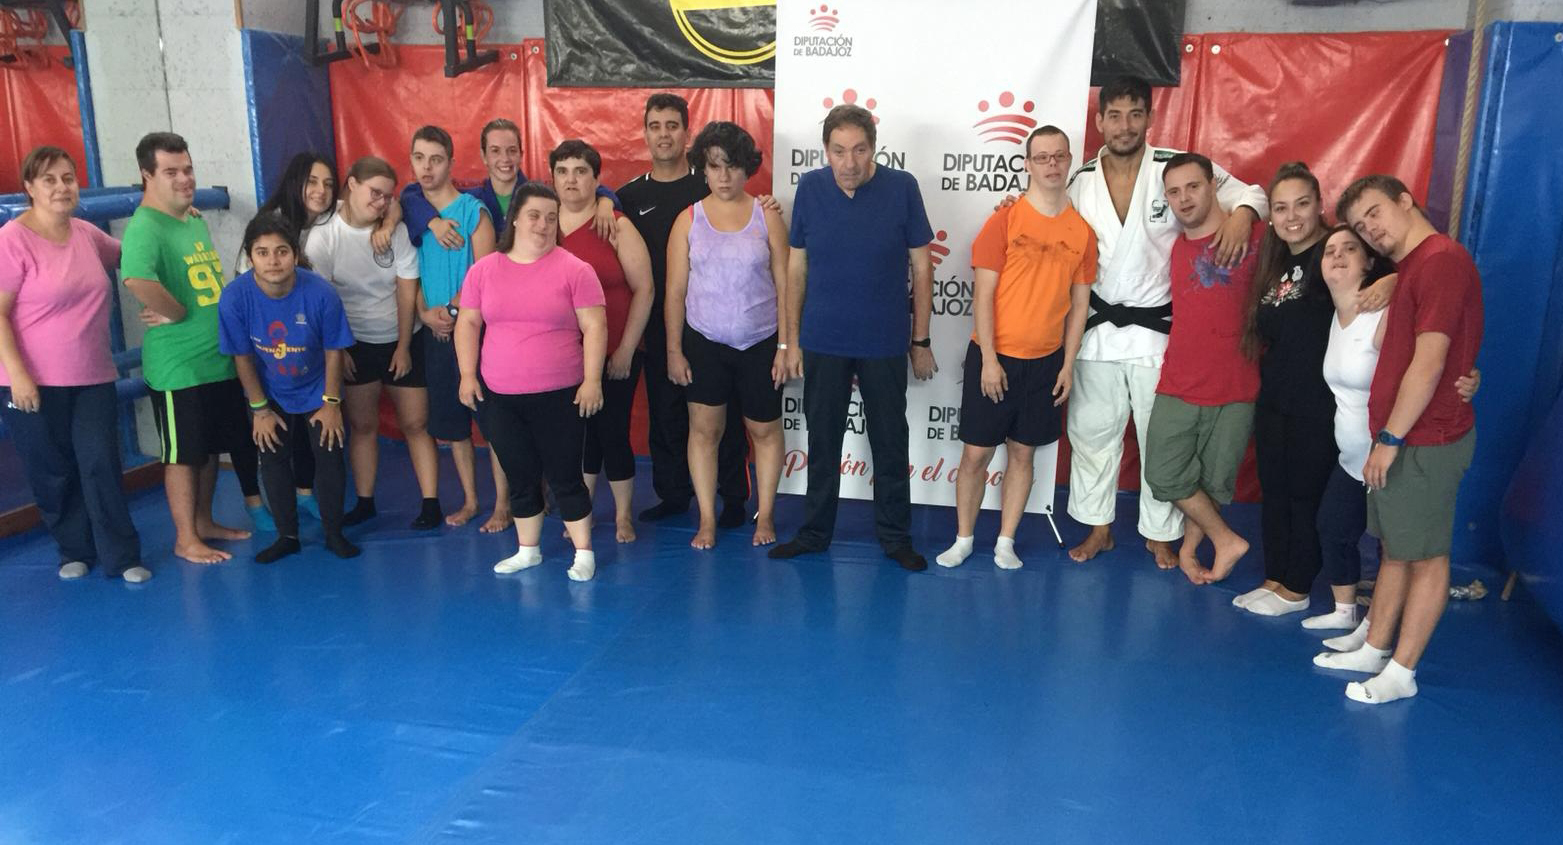 Mujer e inclusión principales líneas de trabajo de la Federación Extremeña de Judo